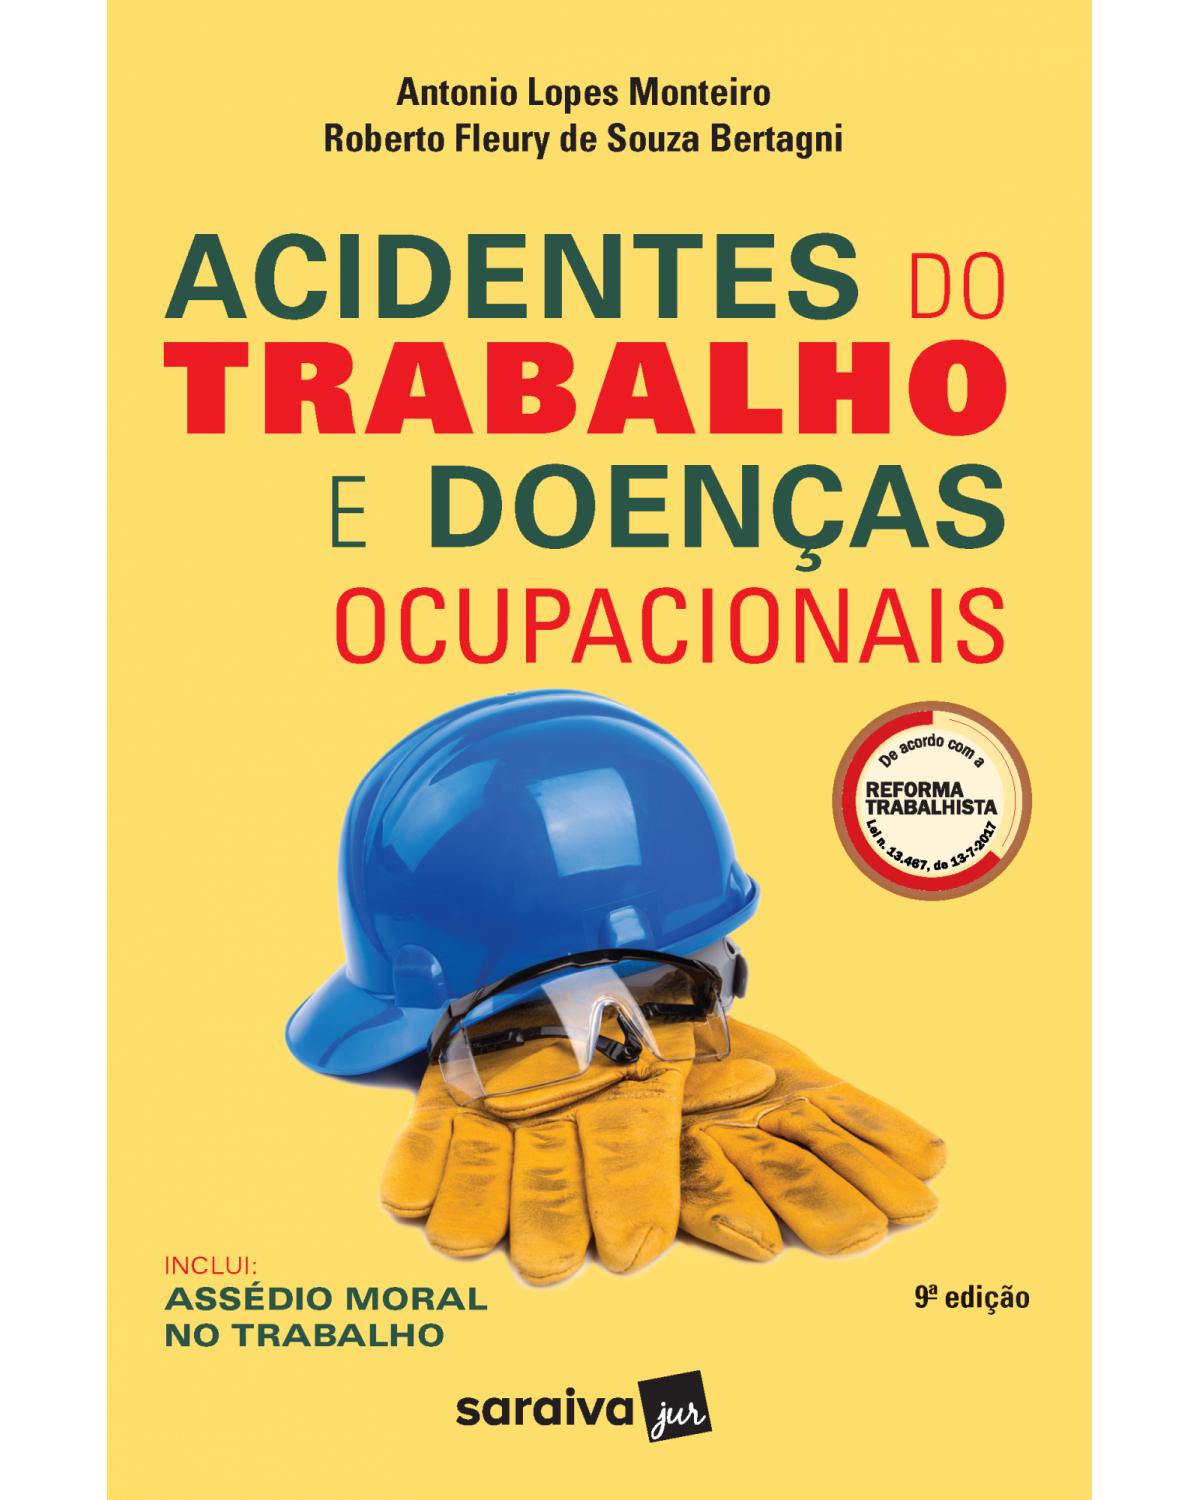 Acidentes do trabalho e doenças ocupacionais - 9ª Edição | 2019